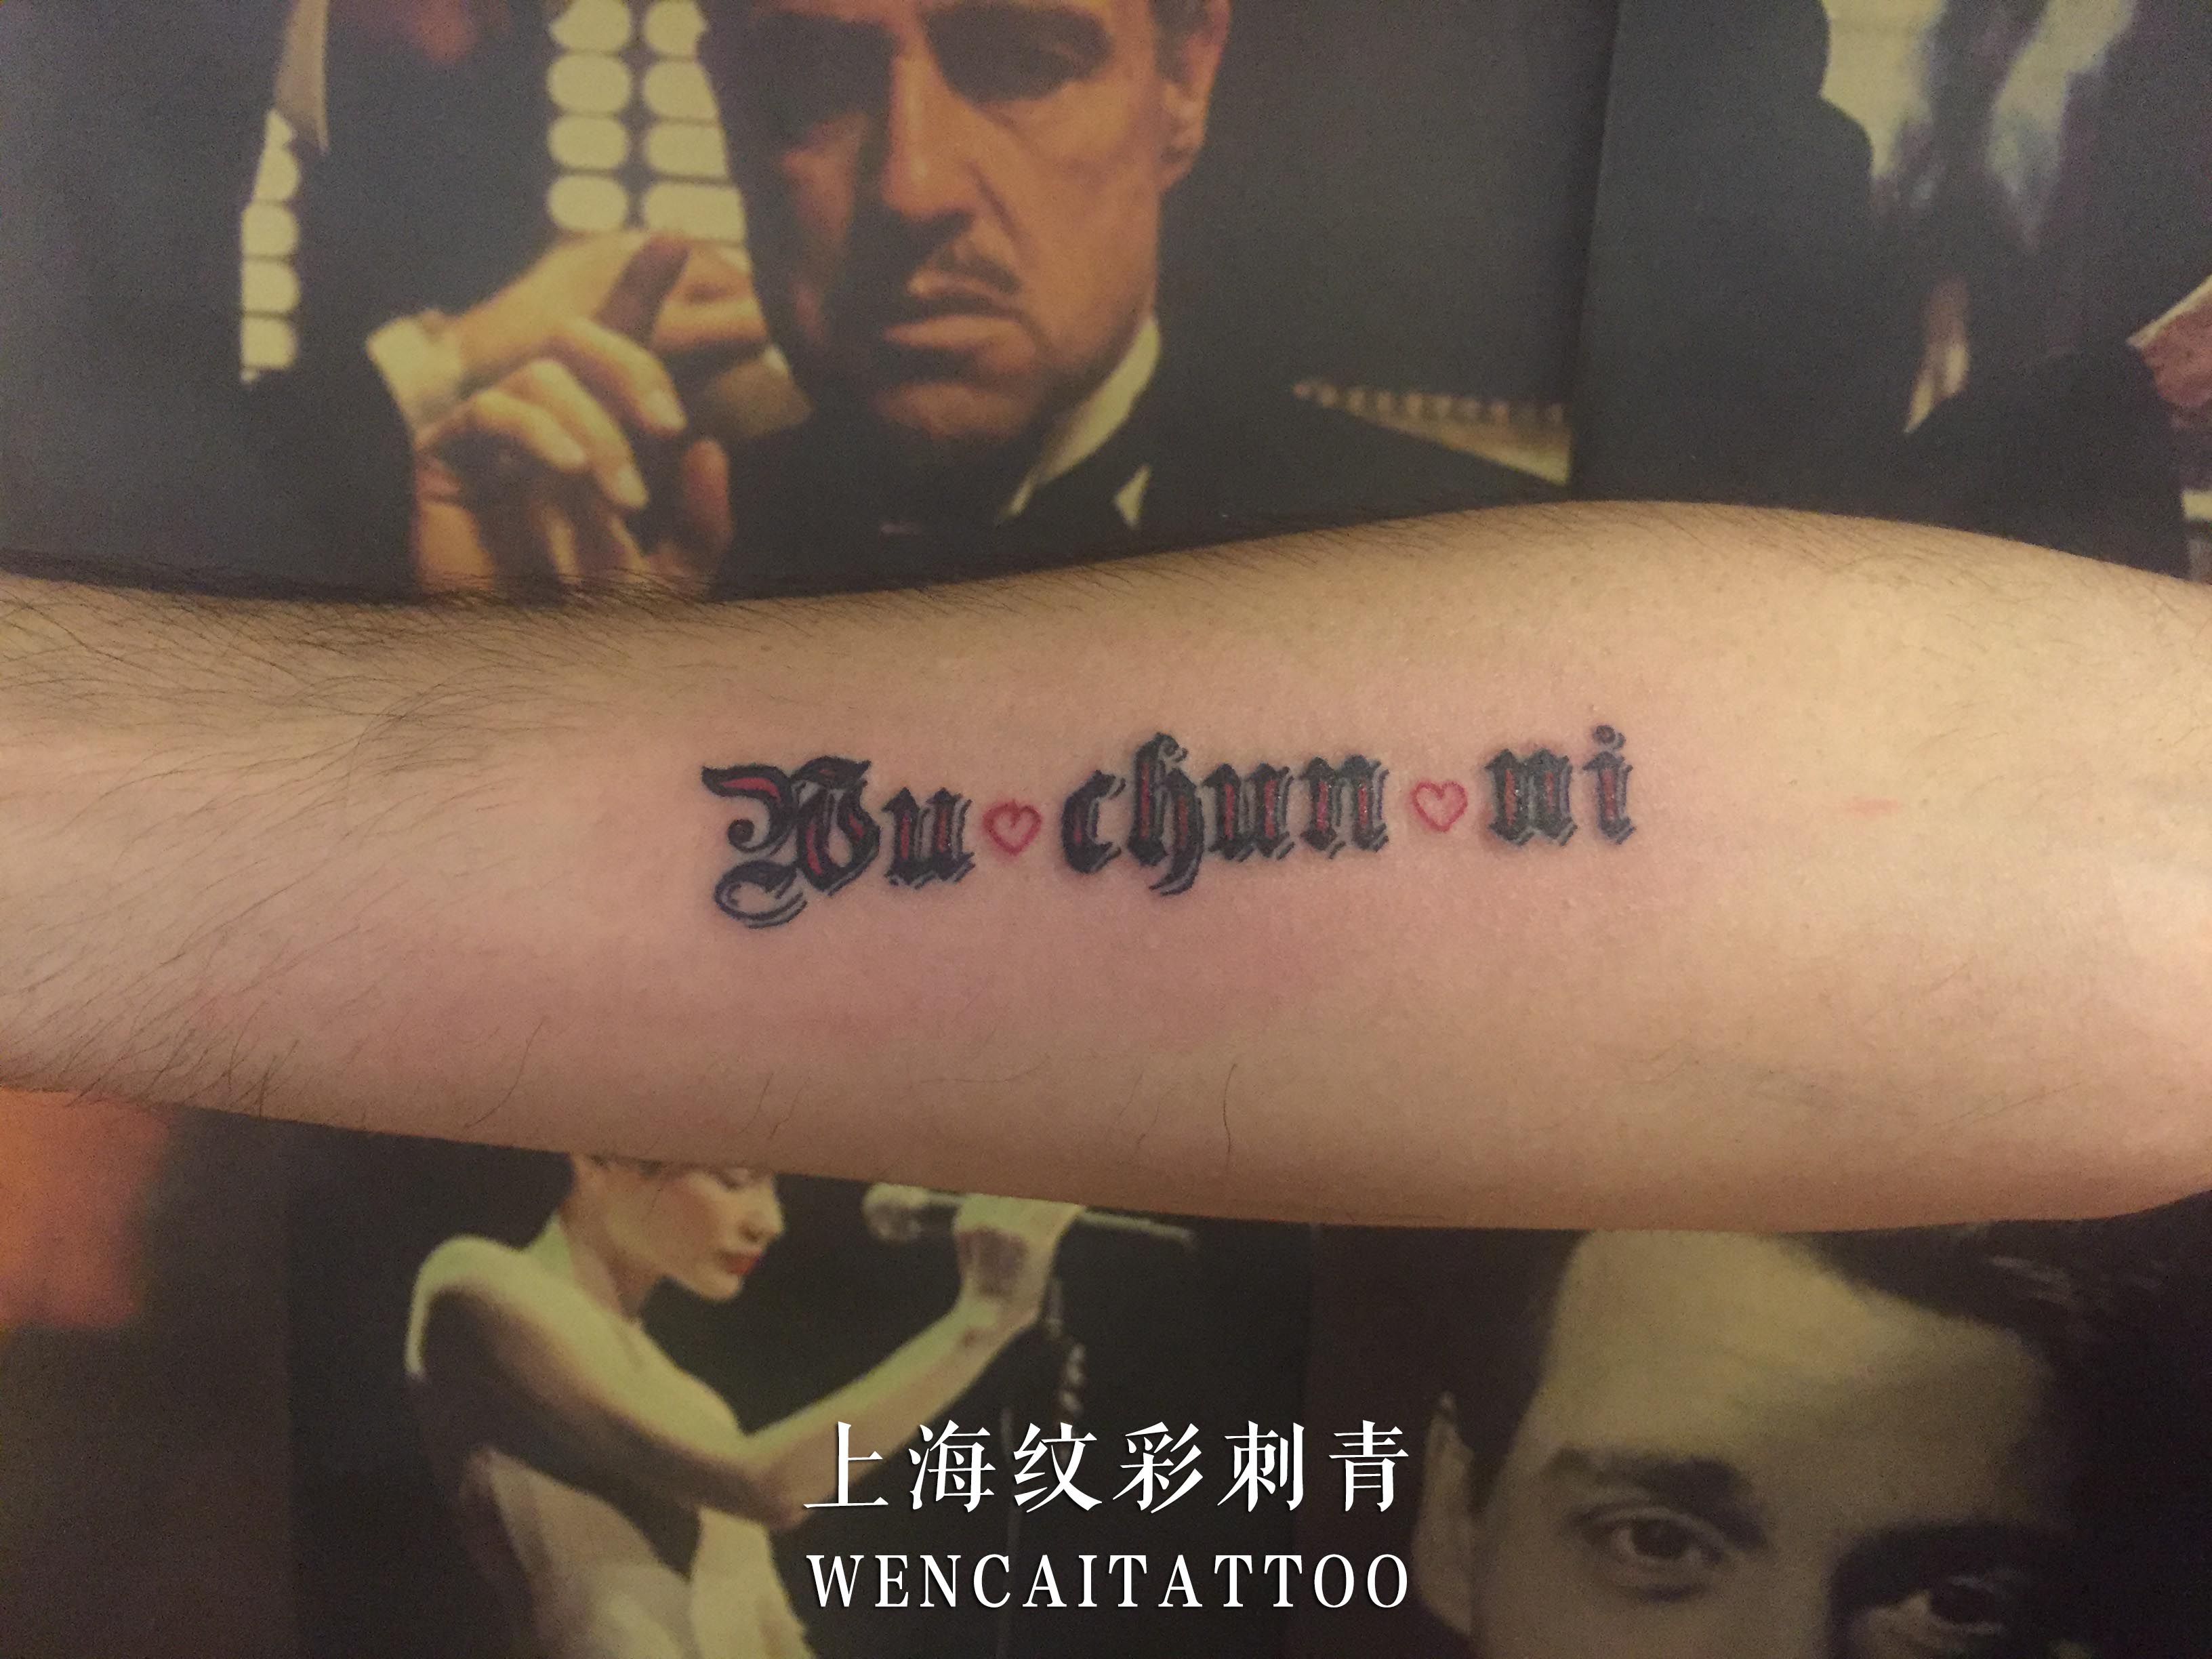 上海的易先生小臂上的示爱英文纹身图案